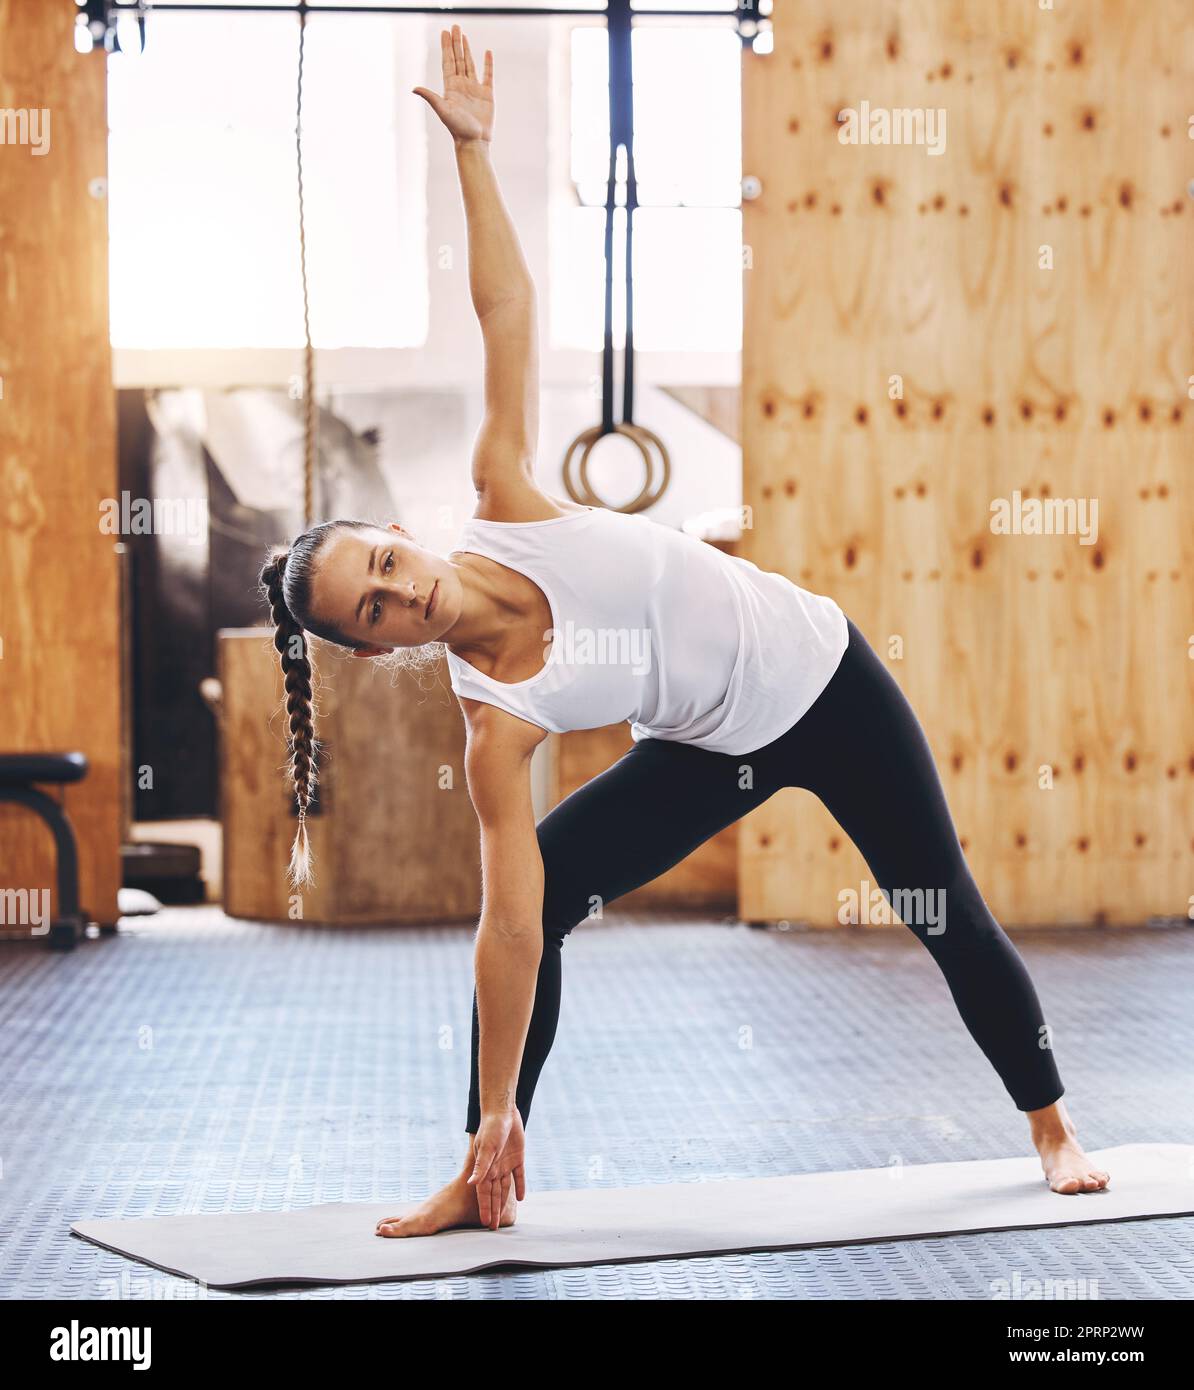 Exercice de bien-être, femme faisant l'entraînement de yoga à la salle de gym et la motivation de forme physique de santé. Fille s'étendant sur le tapis pilates, détendez la formation de lumière en studio, la méditation spirituelle et un mode de vie sain Banque D'Images